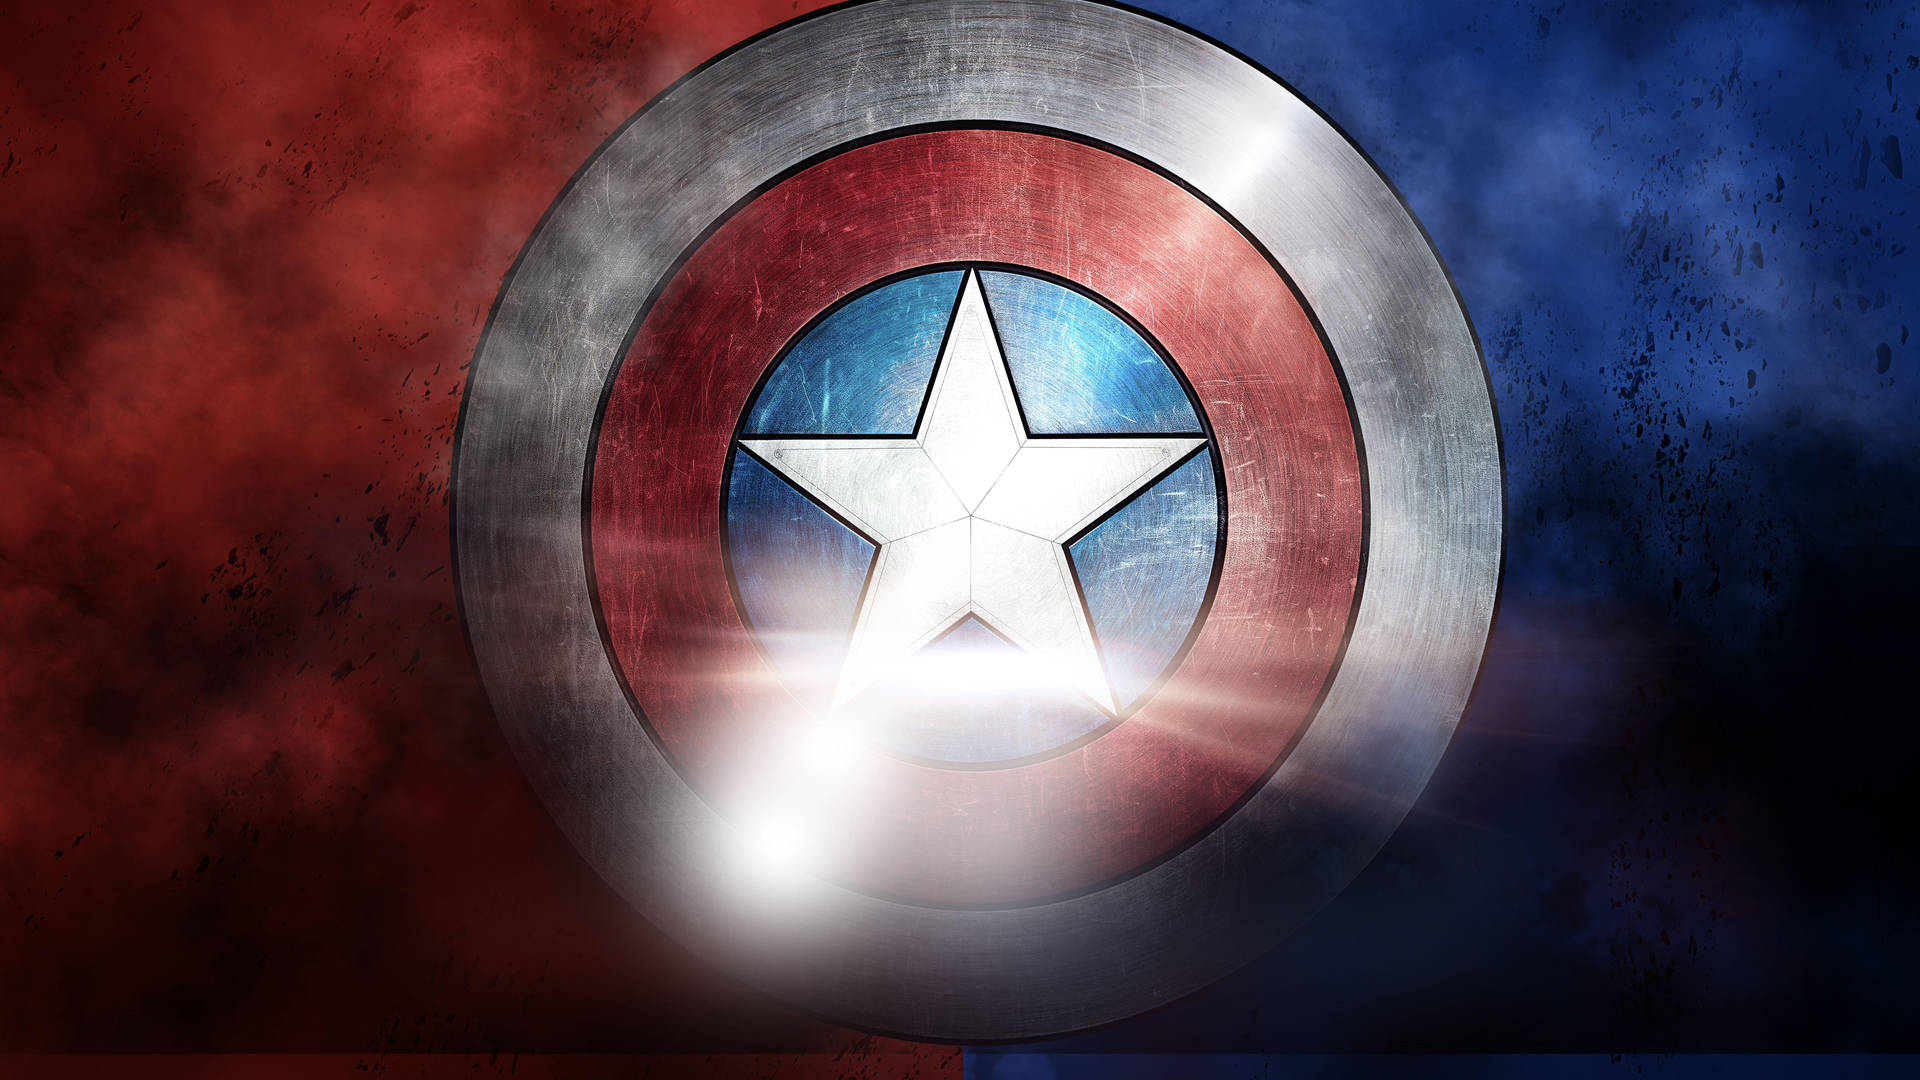 Captain America Shield Image Wallpaper  1080x1920